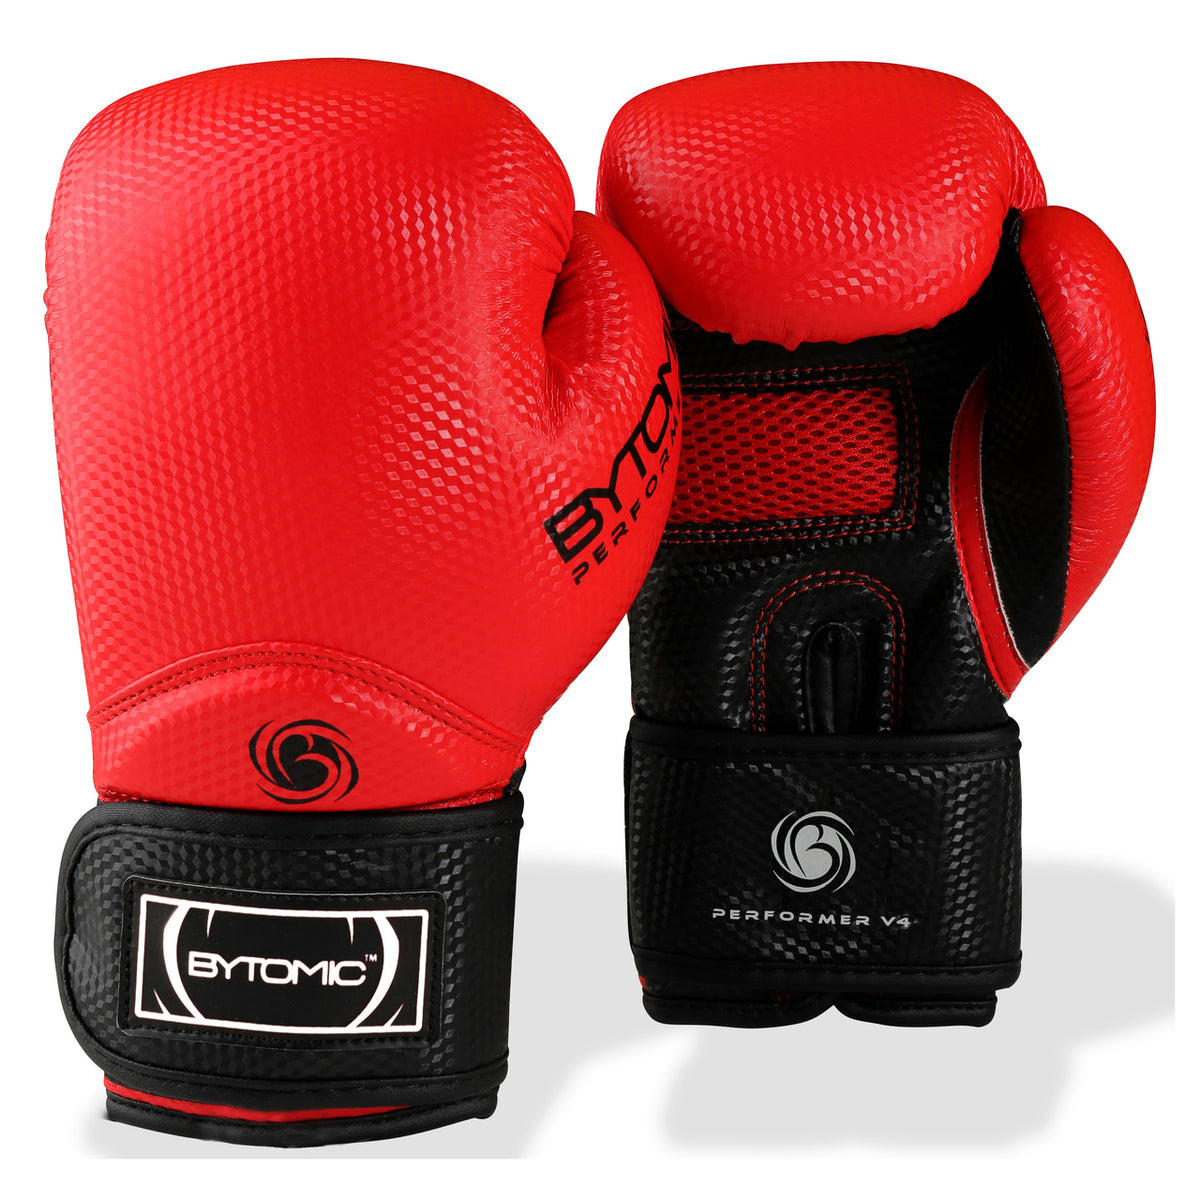 Red Bytomic Performer V4 Boxing Gloves 10oz  